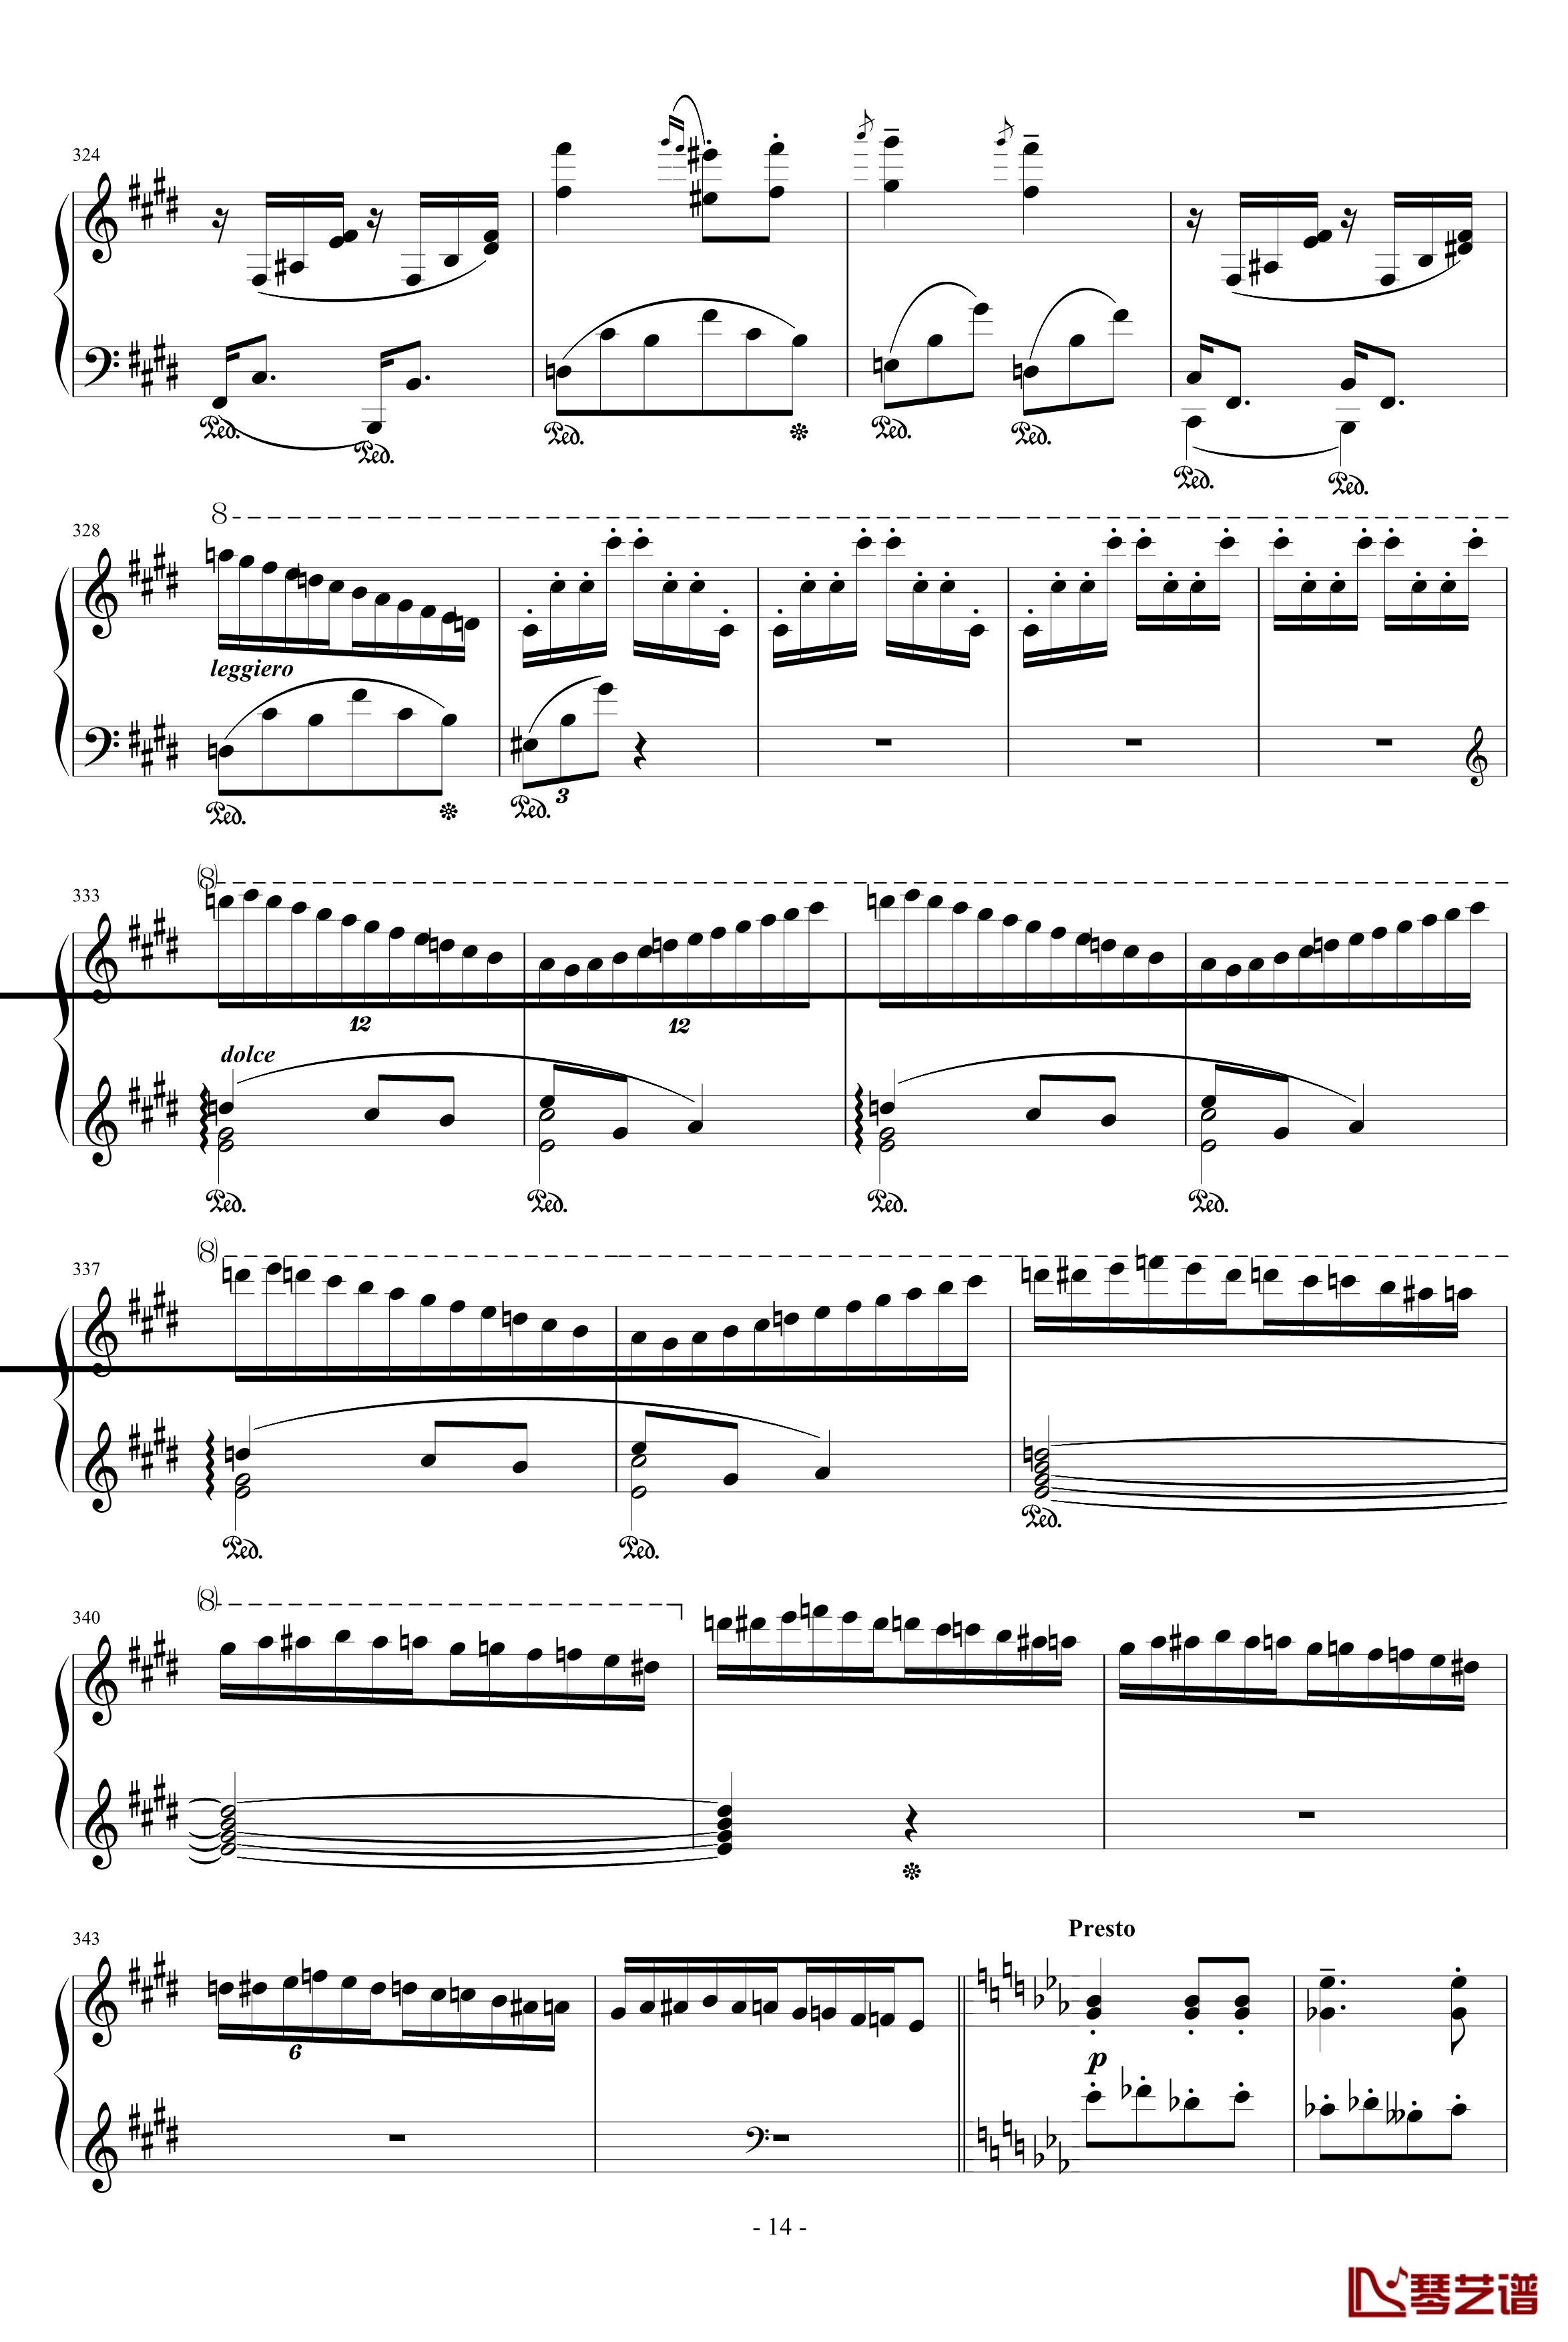 匈牙利狂想曲第9号钢琴谱-19首匈狂里篇幅最浩大、技巧最艰深的作品之一-李斯特14